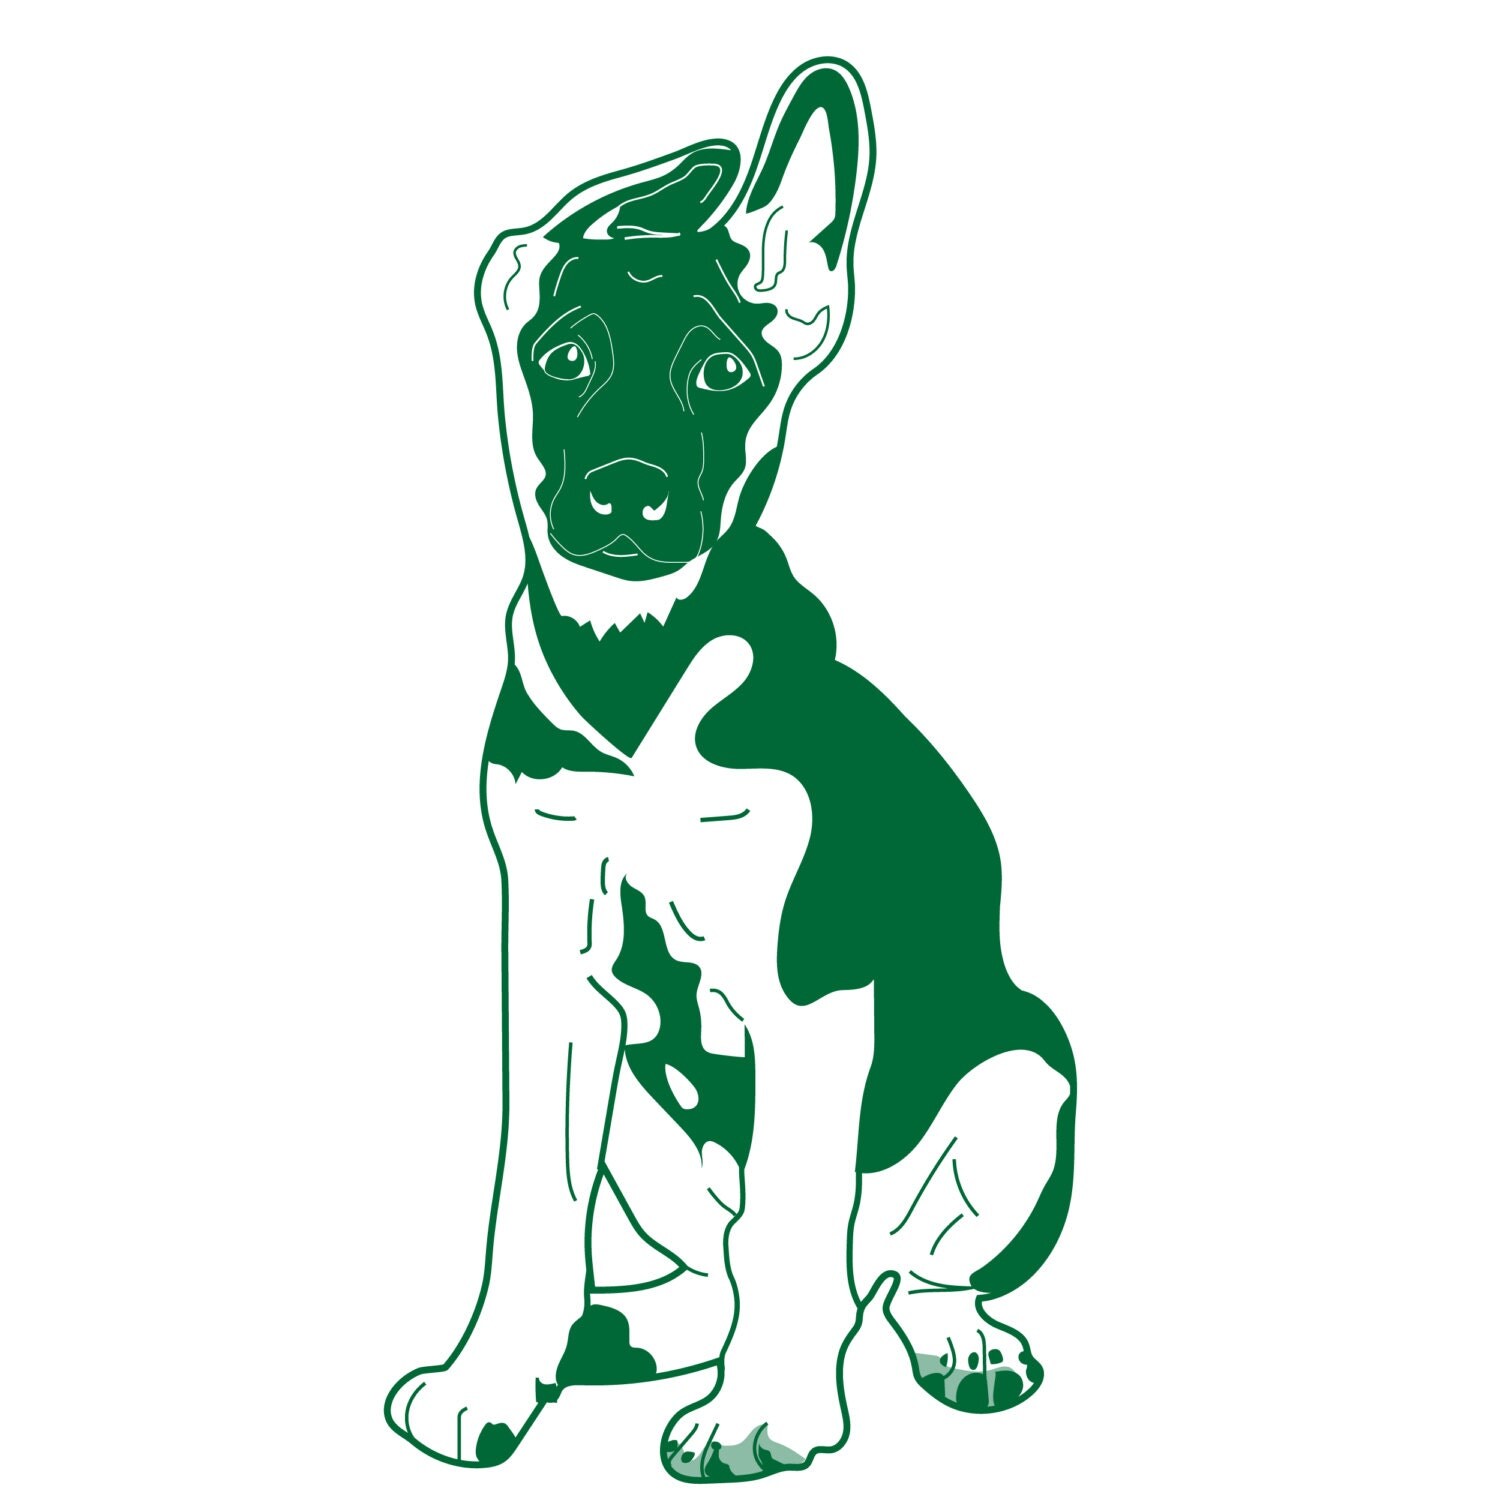 German Shepherd Puppy Vector Art Downloadable Image Clip